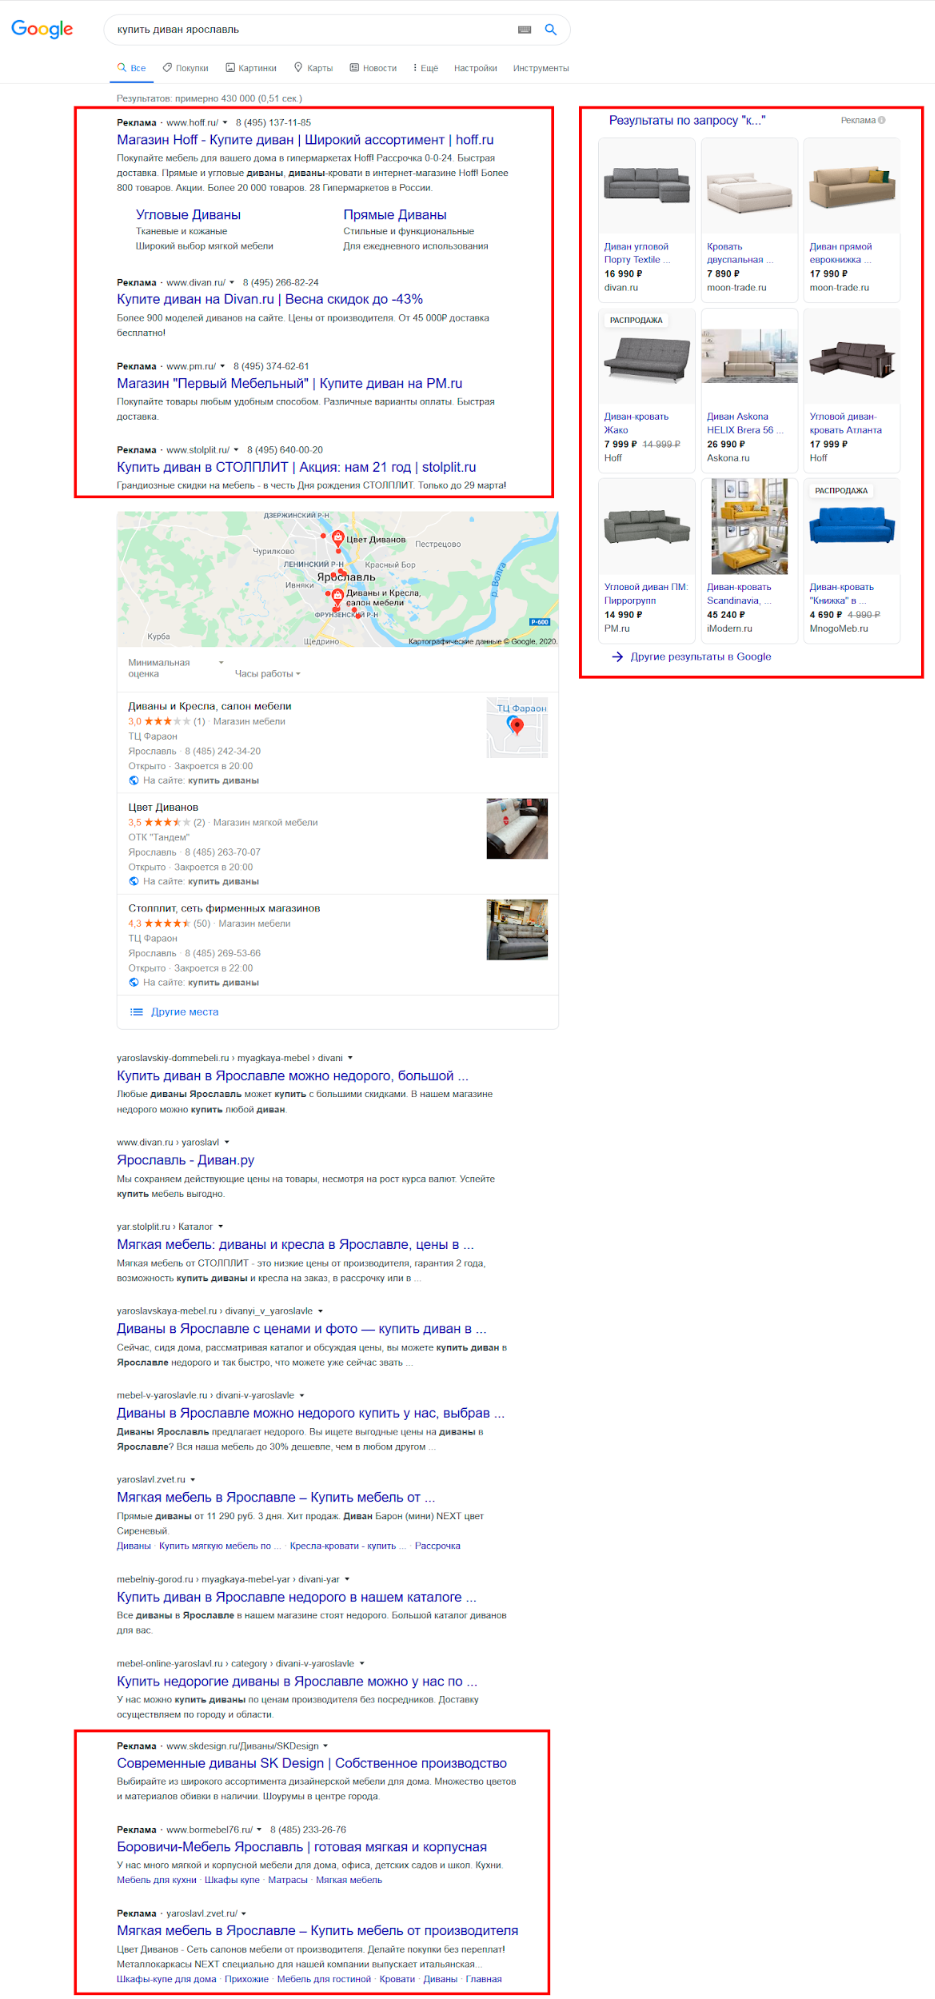 Рекламные блоки в результатах Google поиска